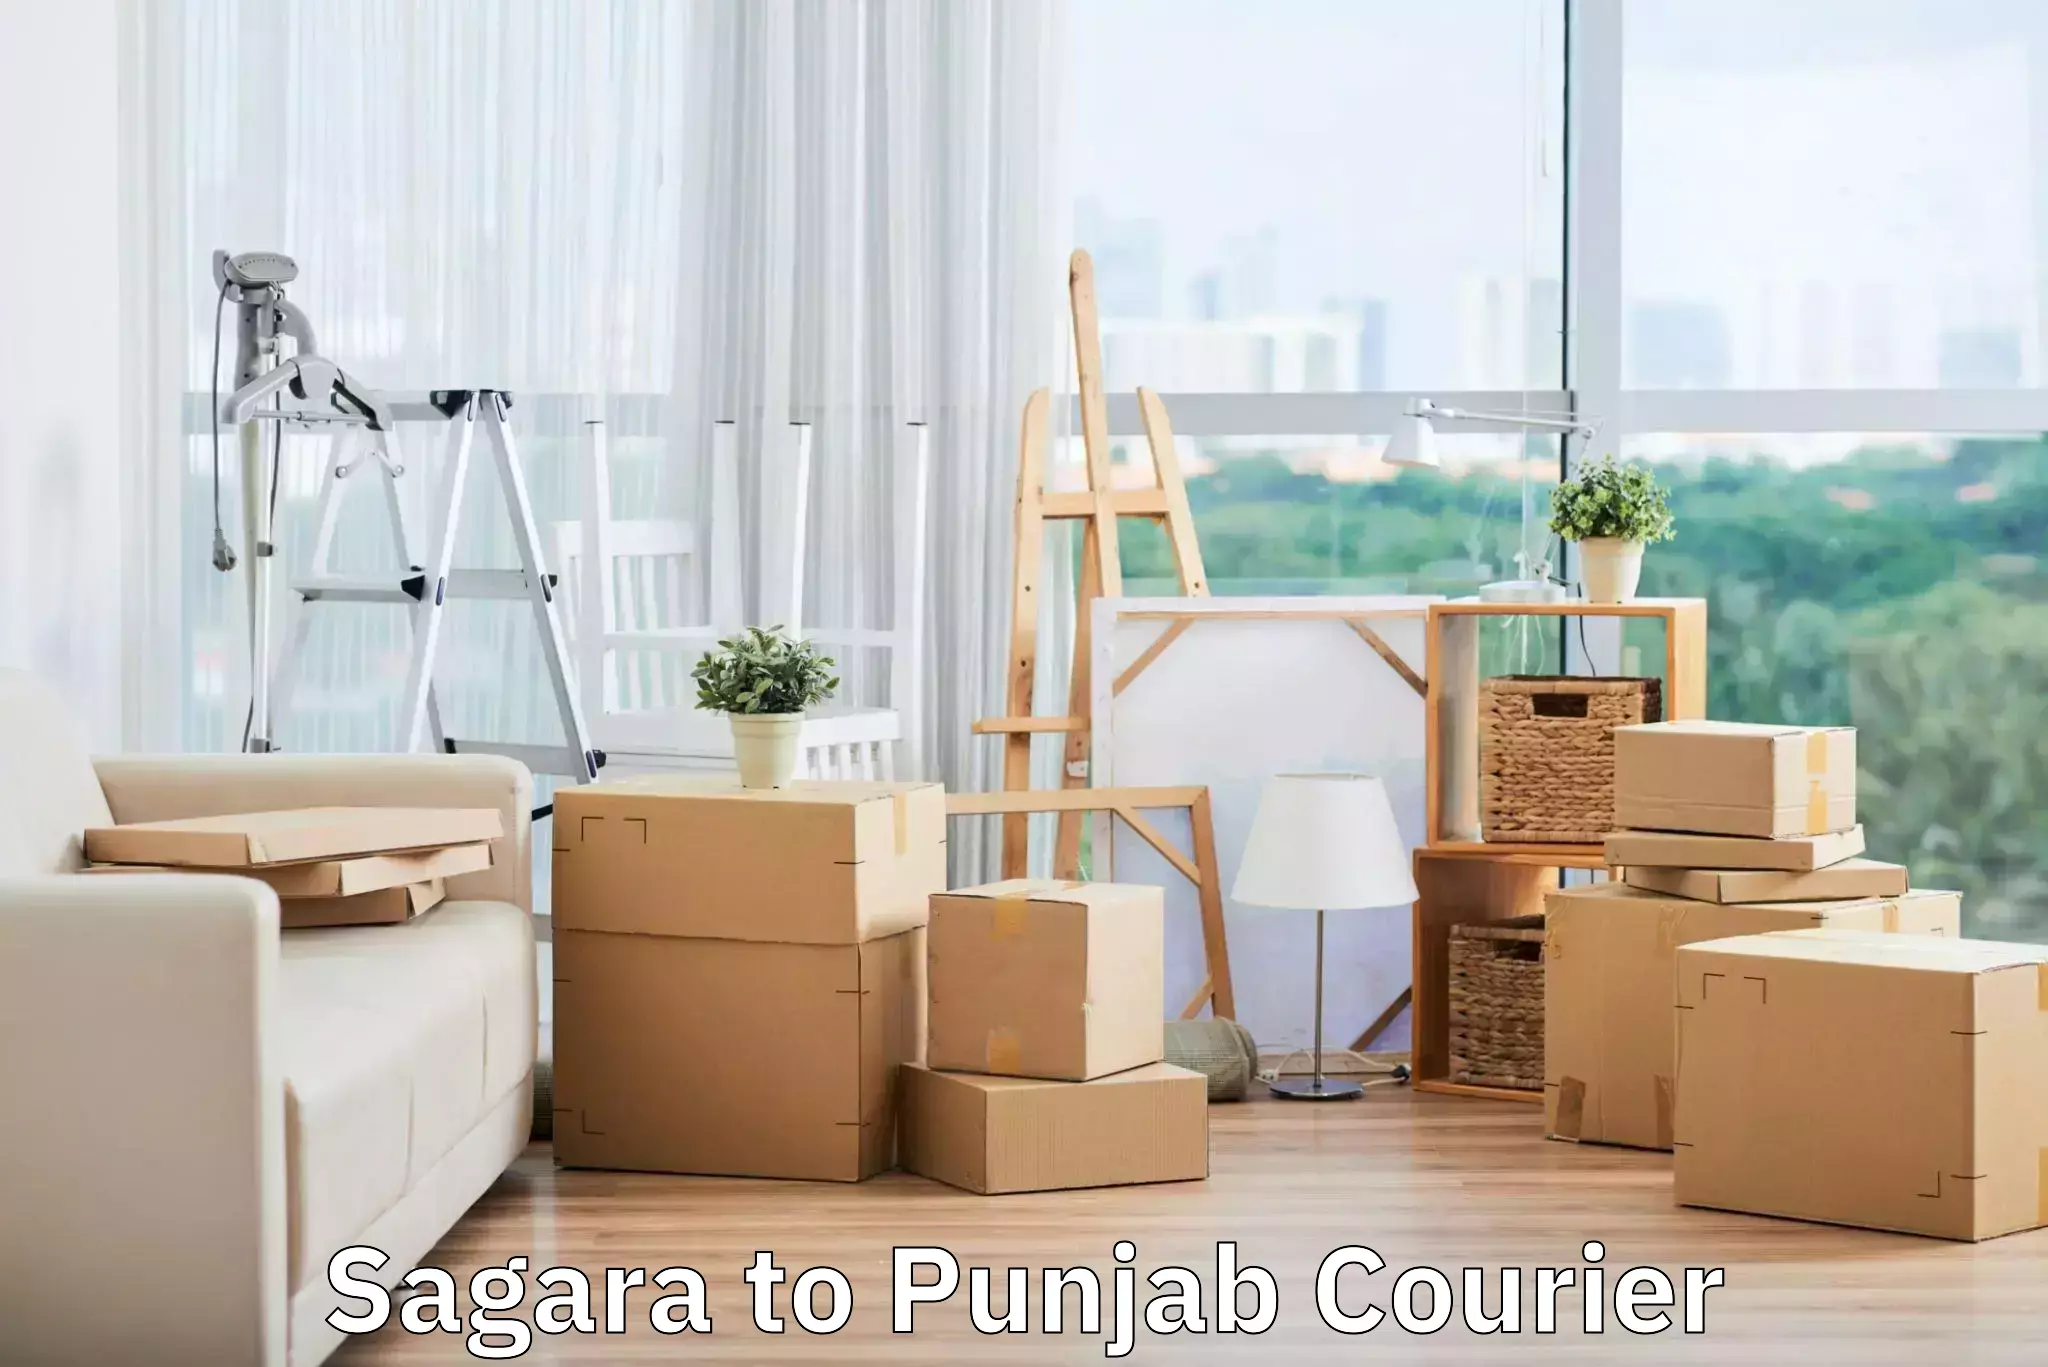 Baggage delivery scheduling Sagara to Punjab